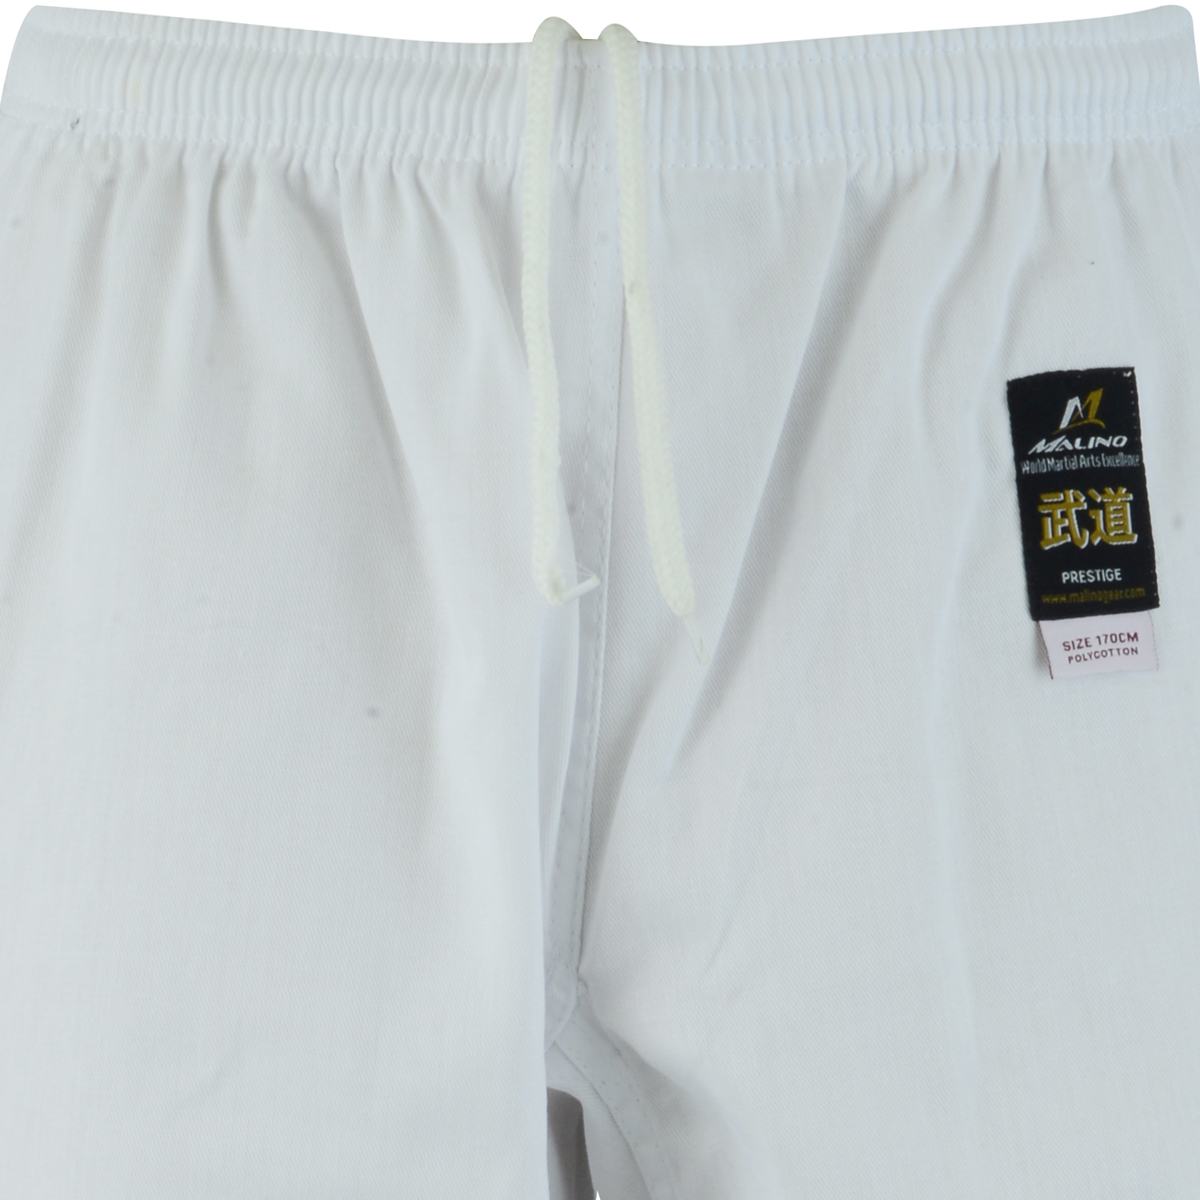 Malino Student Judo Trousers White Kids Adults Lightweight Pants 100% Cotton 7oz 